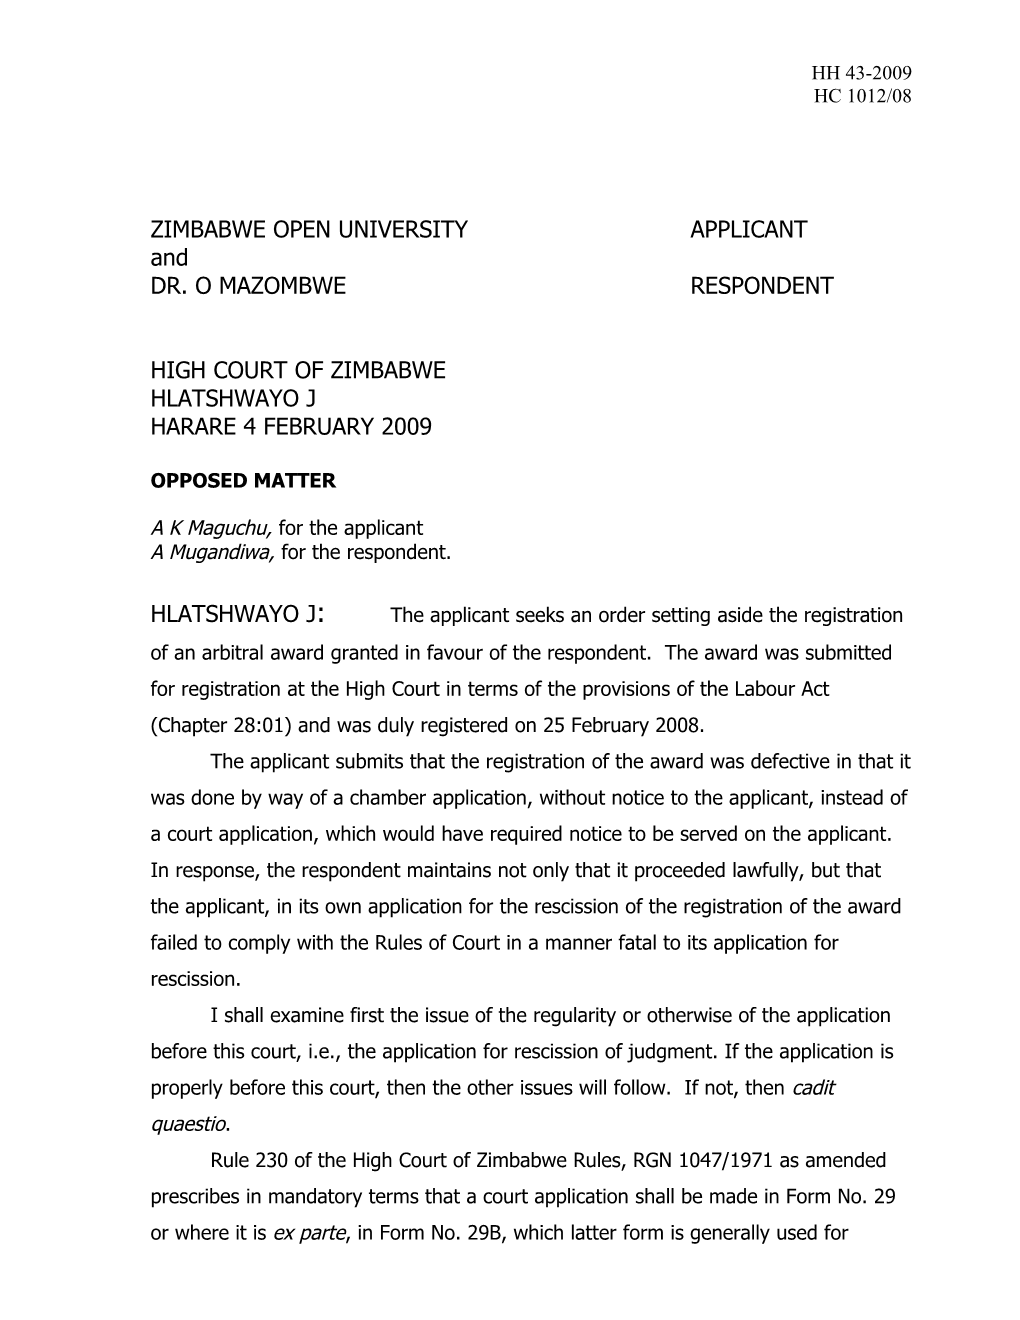 Zimbabwe Open Universityapplicant